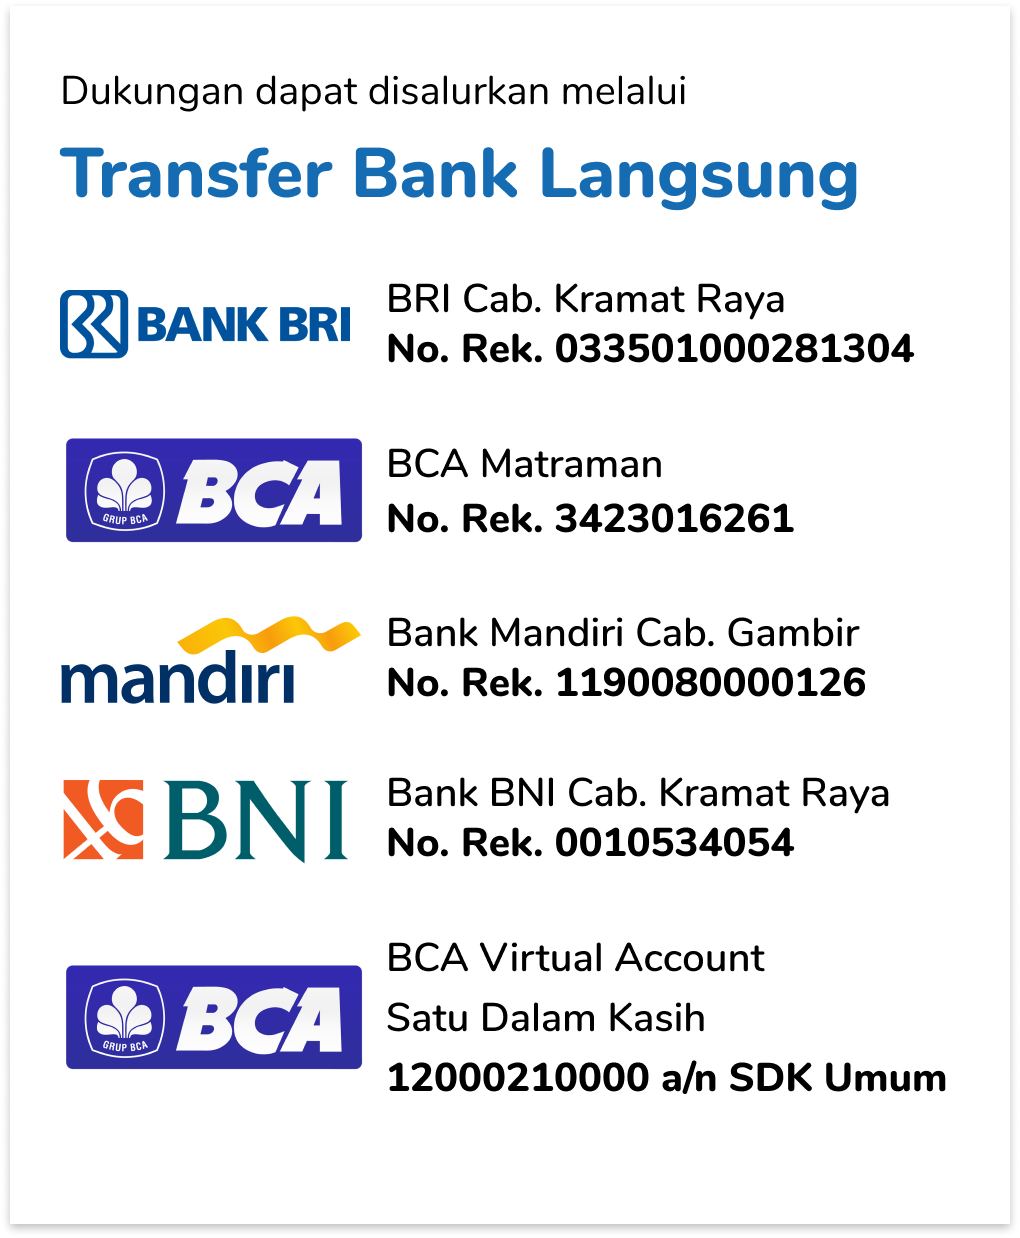 Dukungan lewat transfer Bank